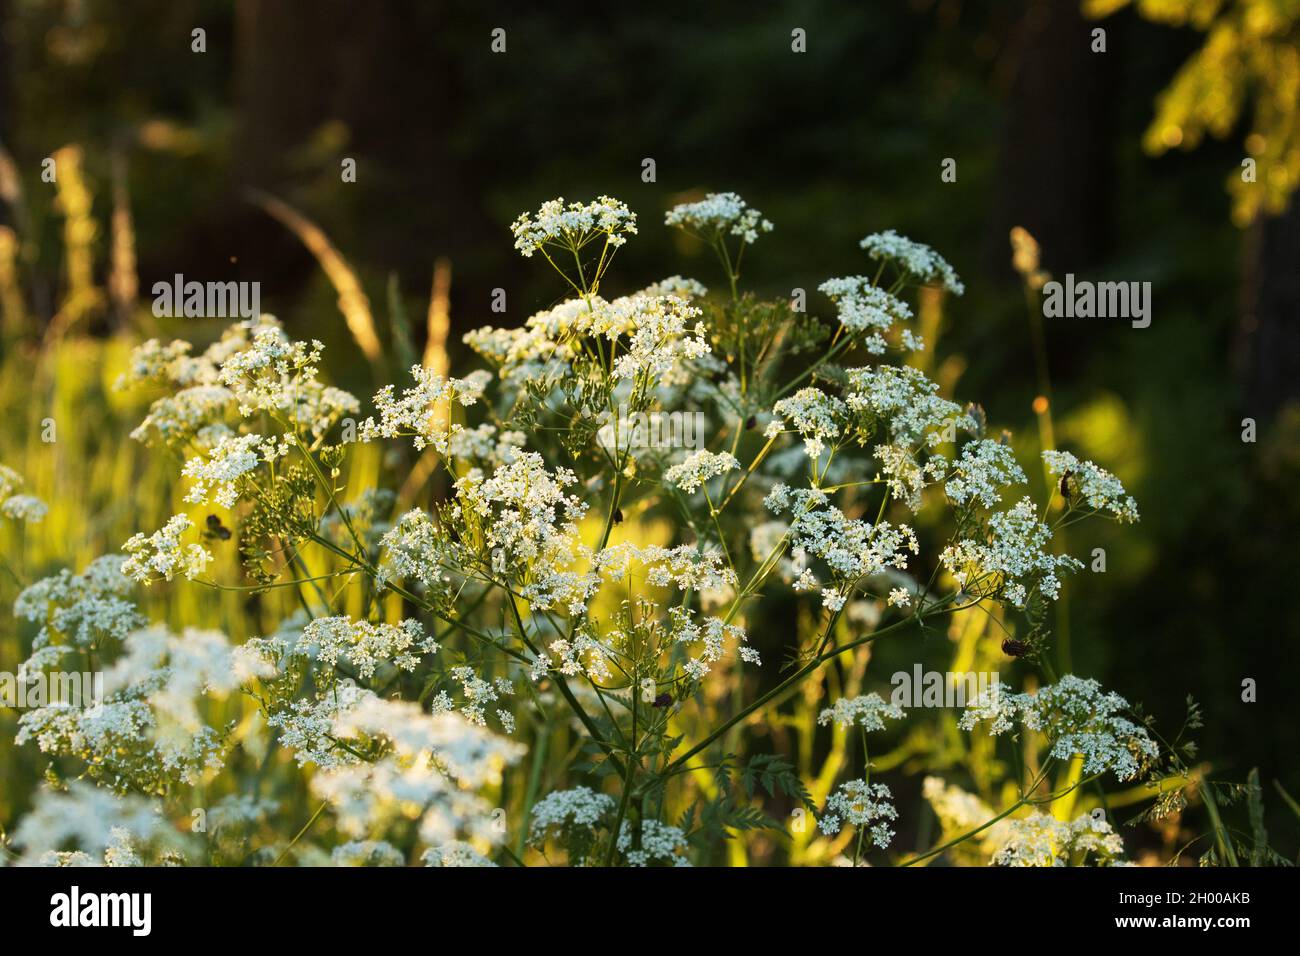 Bel prezzemolo di mucca, Anthriscus sylvestris fiorisce in una serata di inizio estate in Estonia, Europa del Nord. Foto Stock